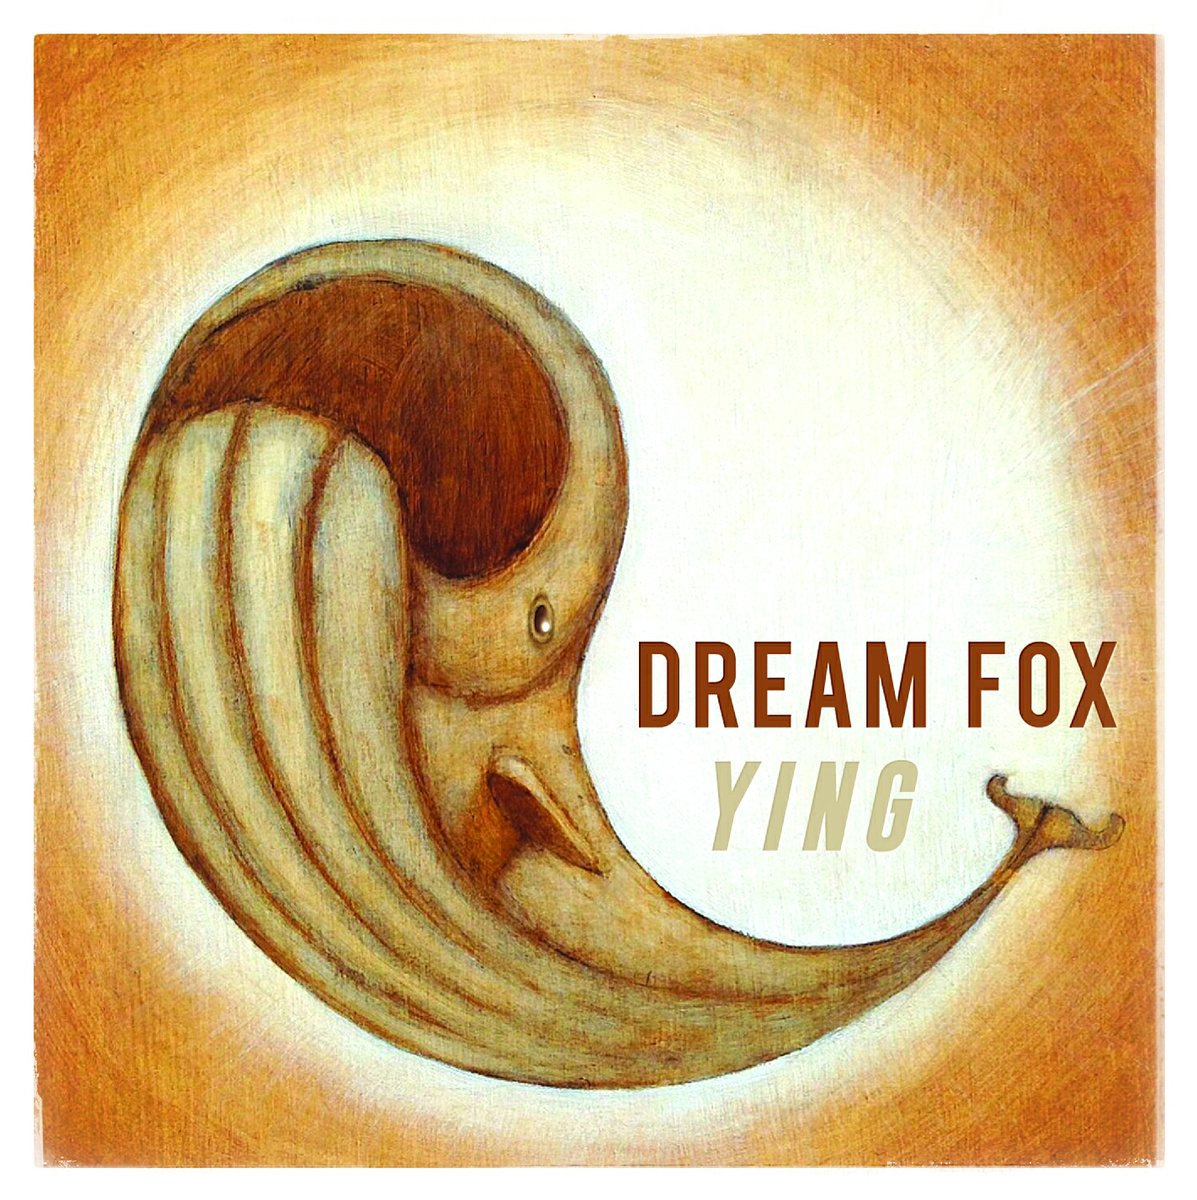 Dreaming Fox. Dream Fox.